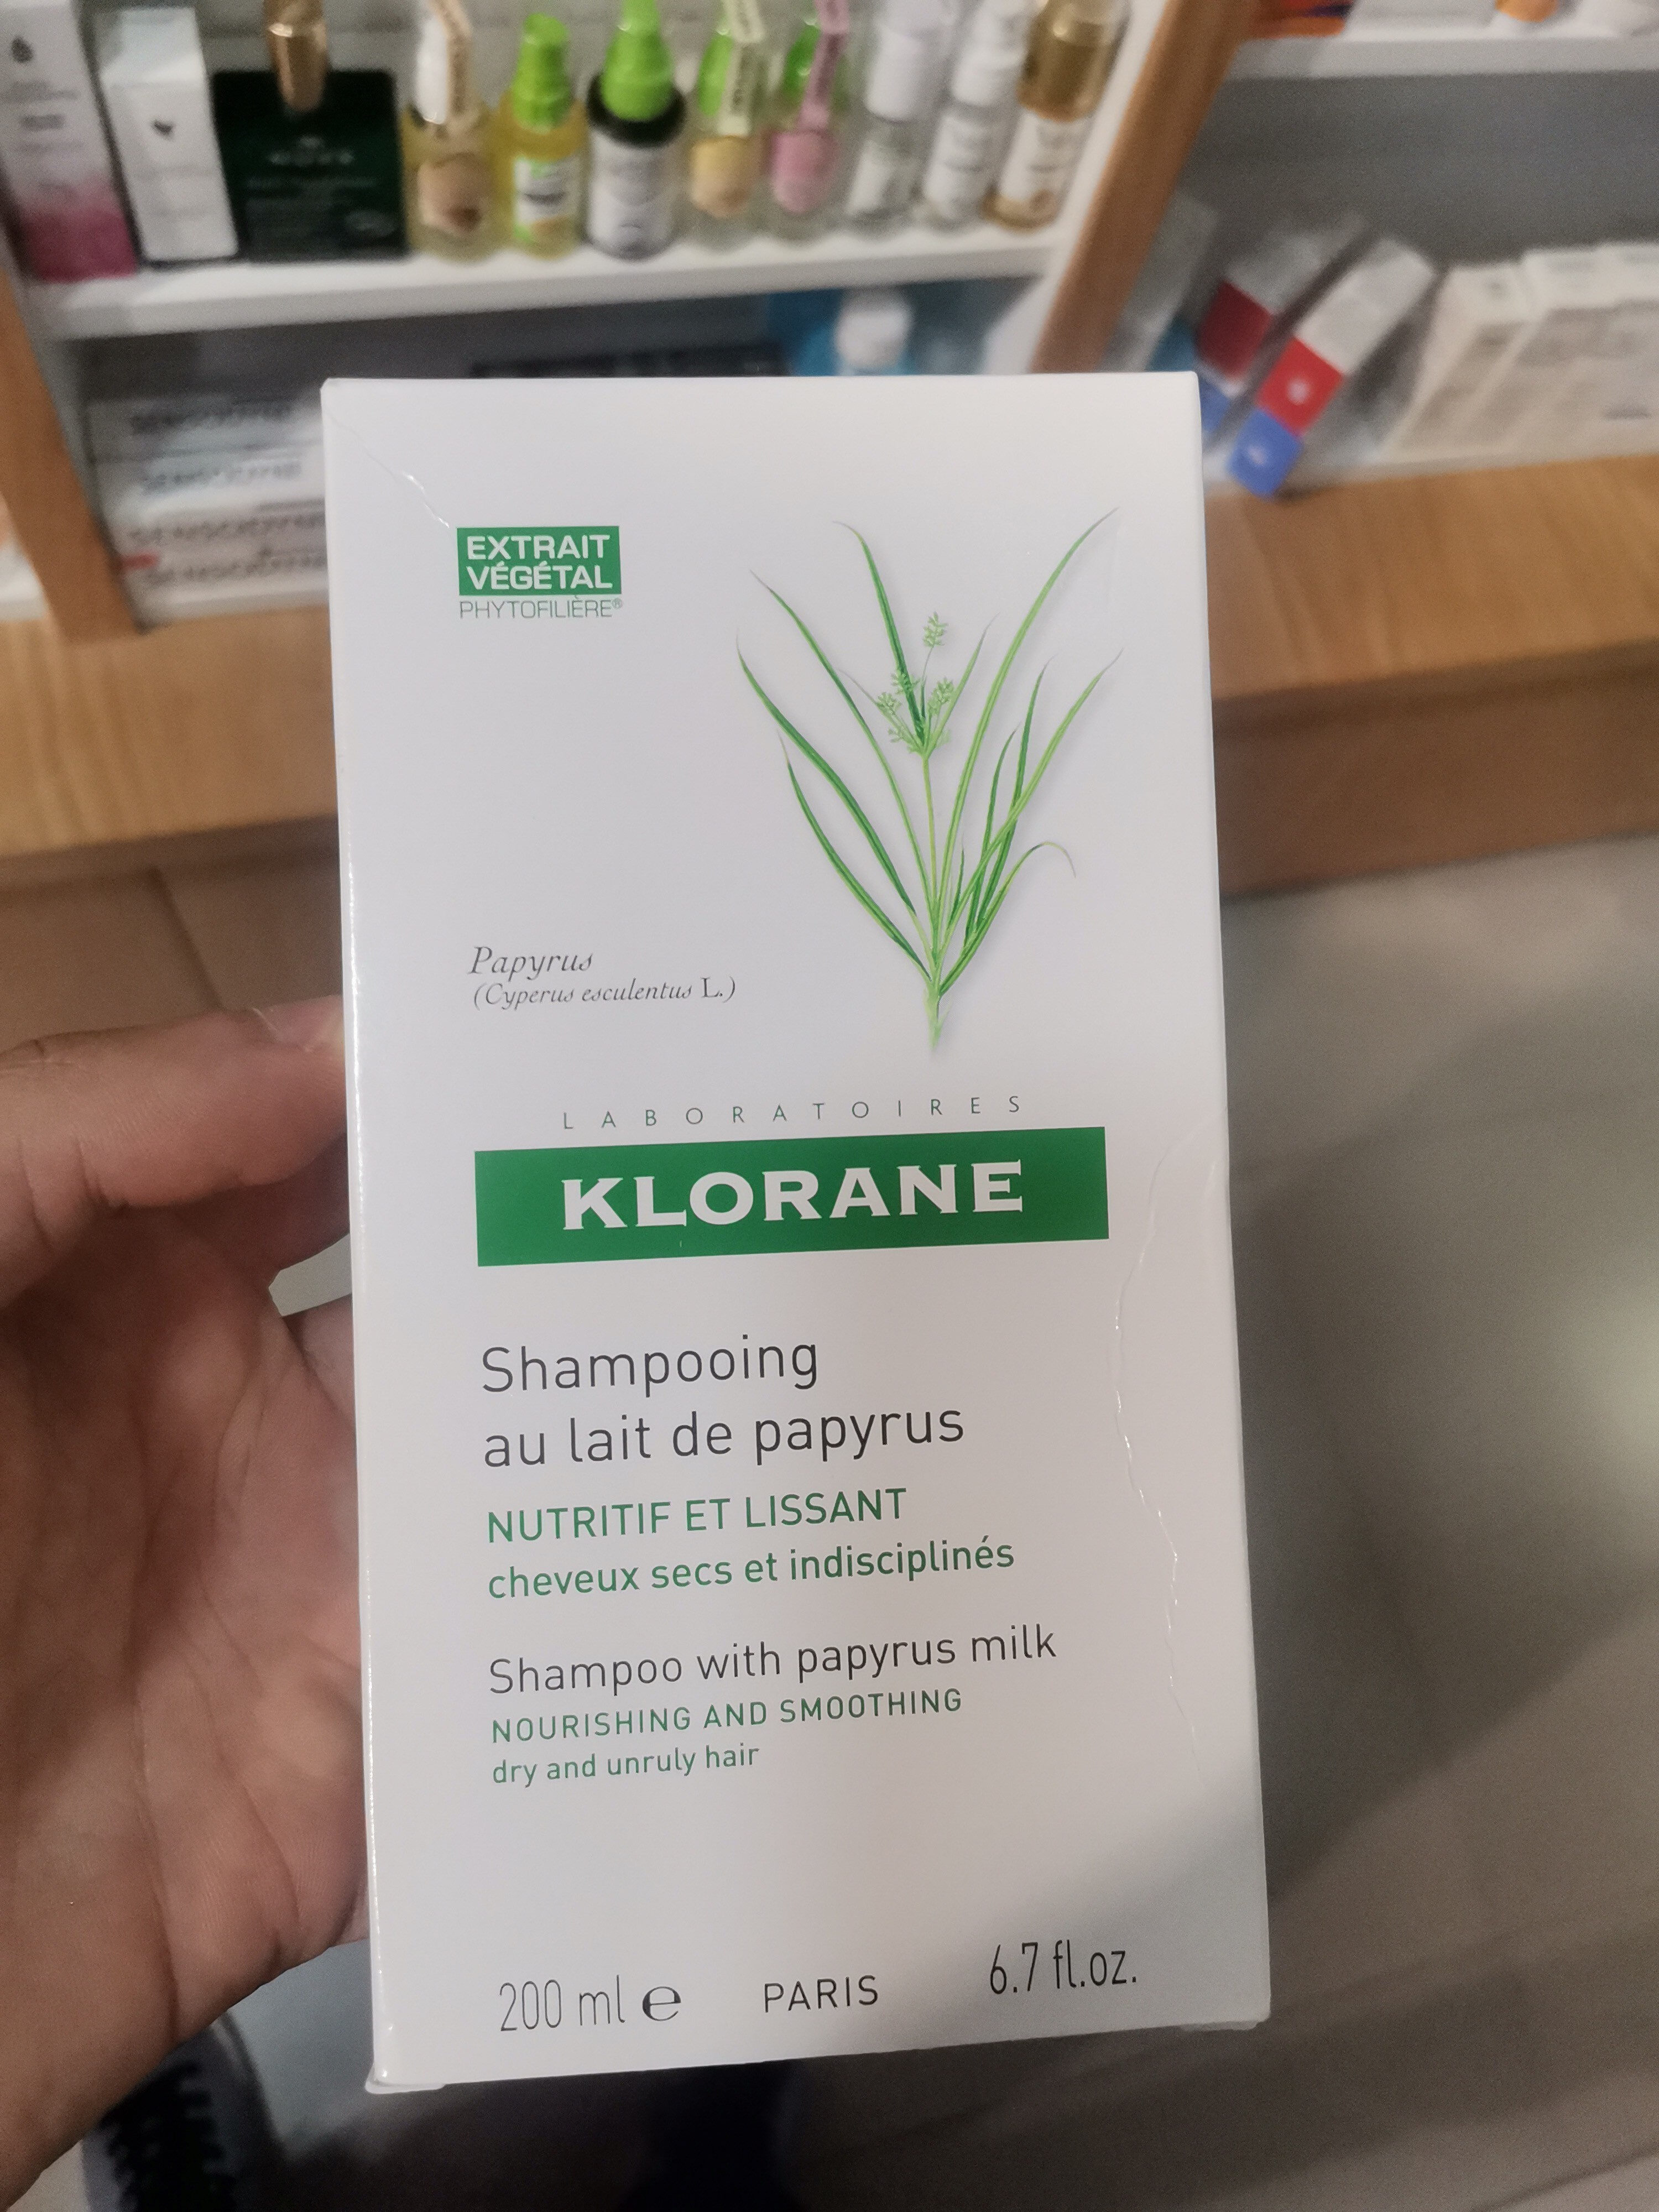 Klorane Shampoing au lait de papyrus - Продукт - fr